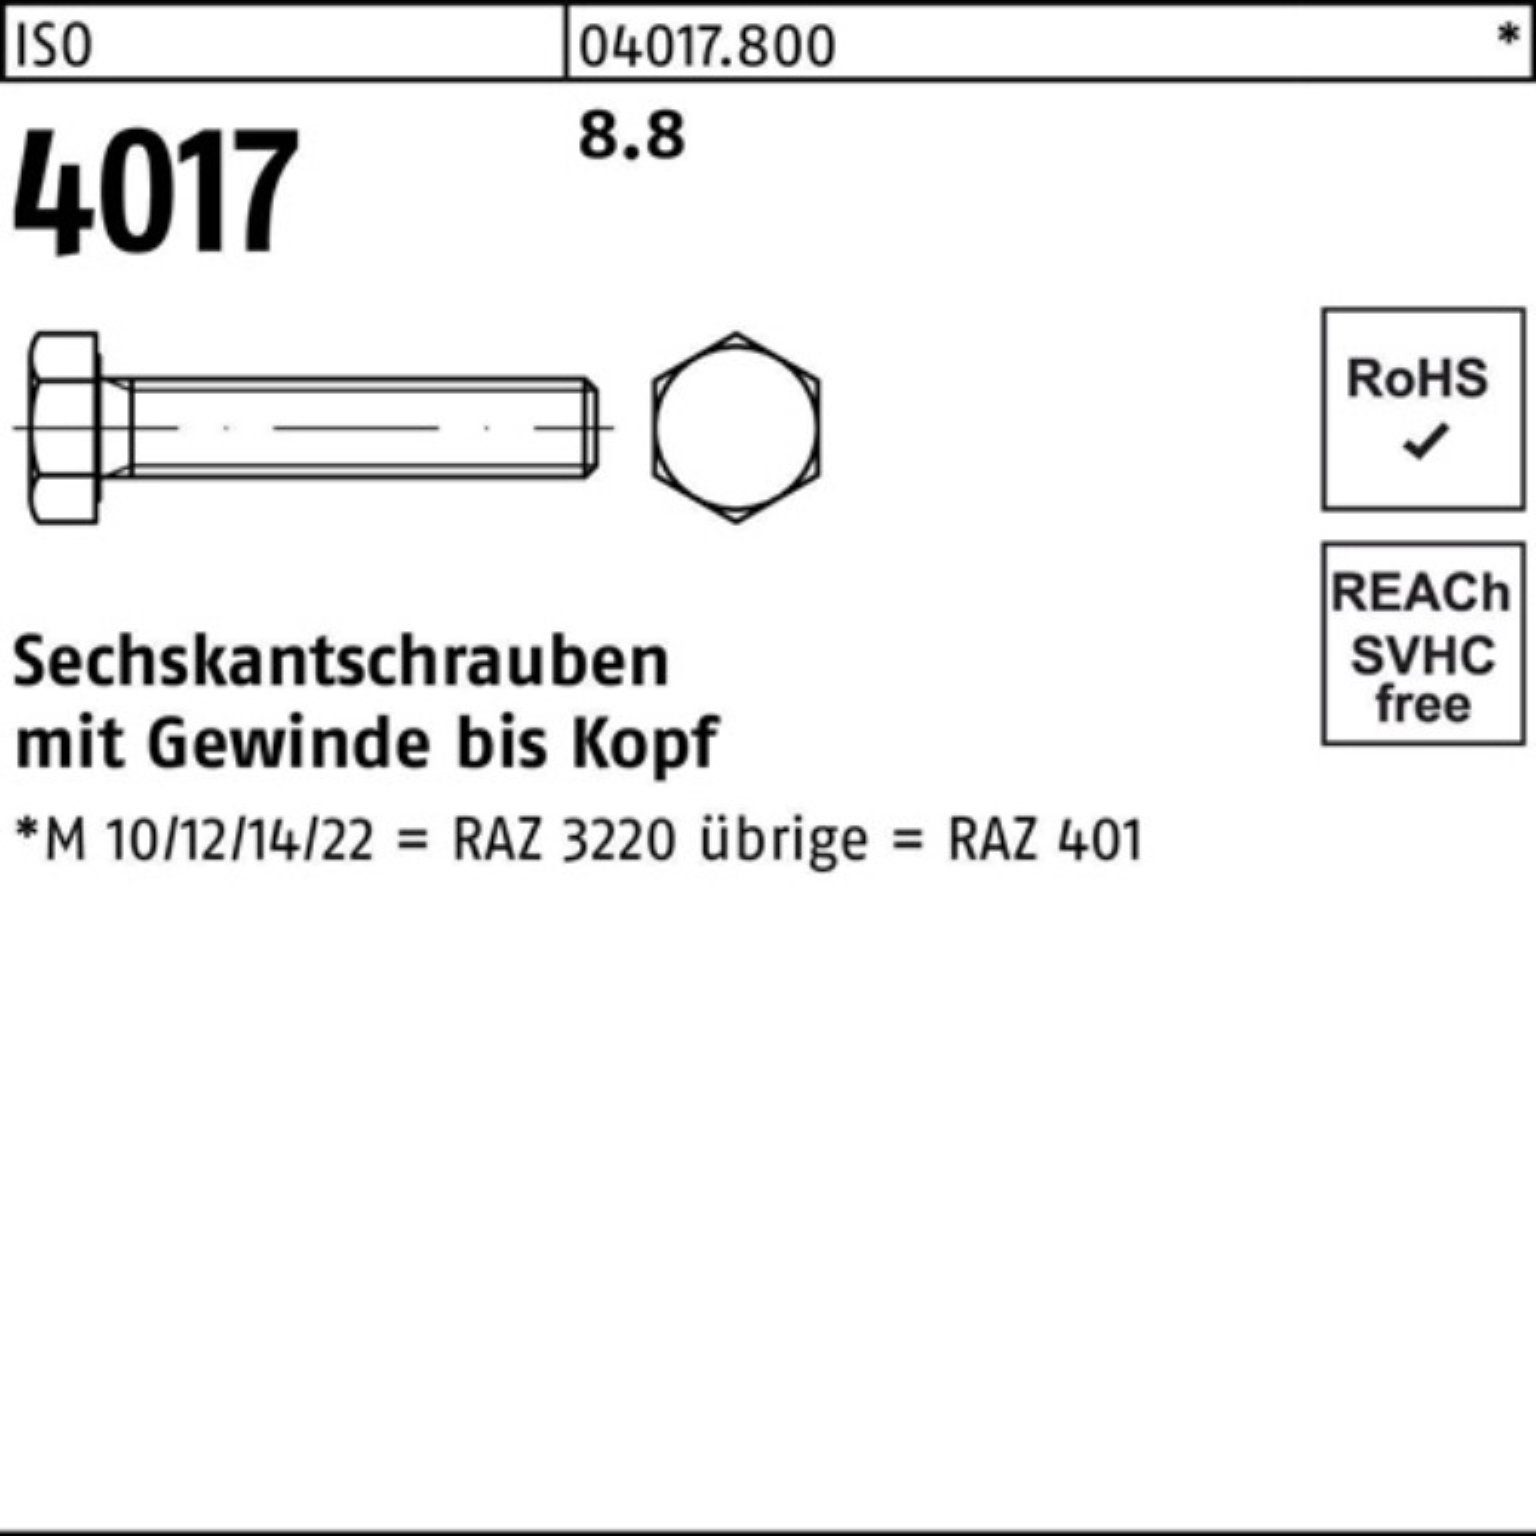 Sechskantschraube VG ISO Sechskantschraube Bufab 220 401 4017 Pack 8.8 Stück 100er M16x 1 ISO